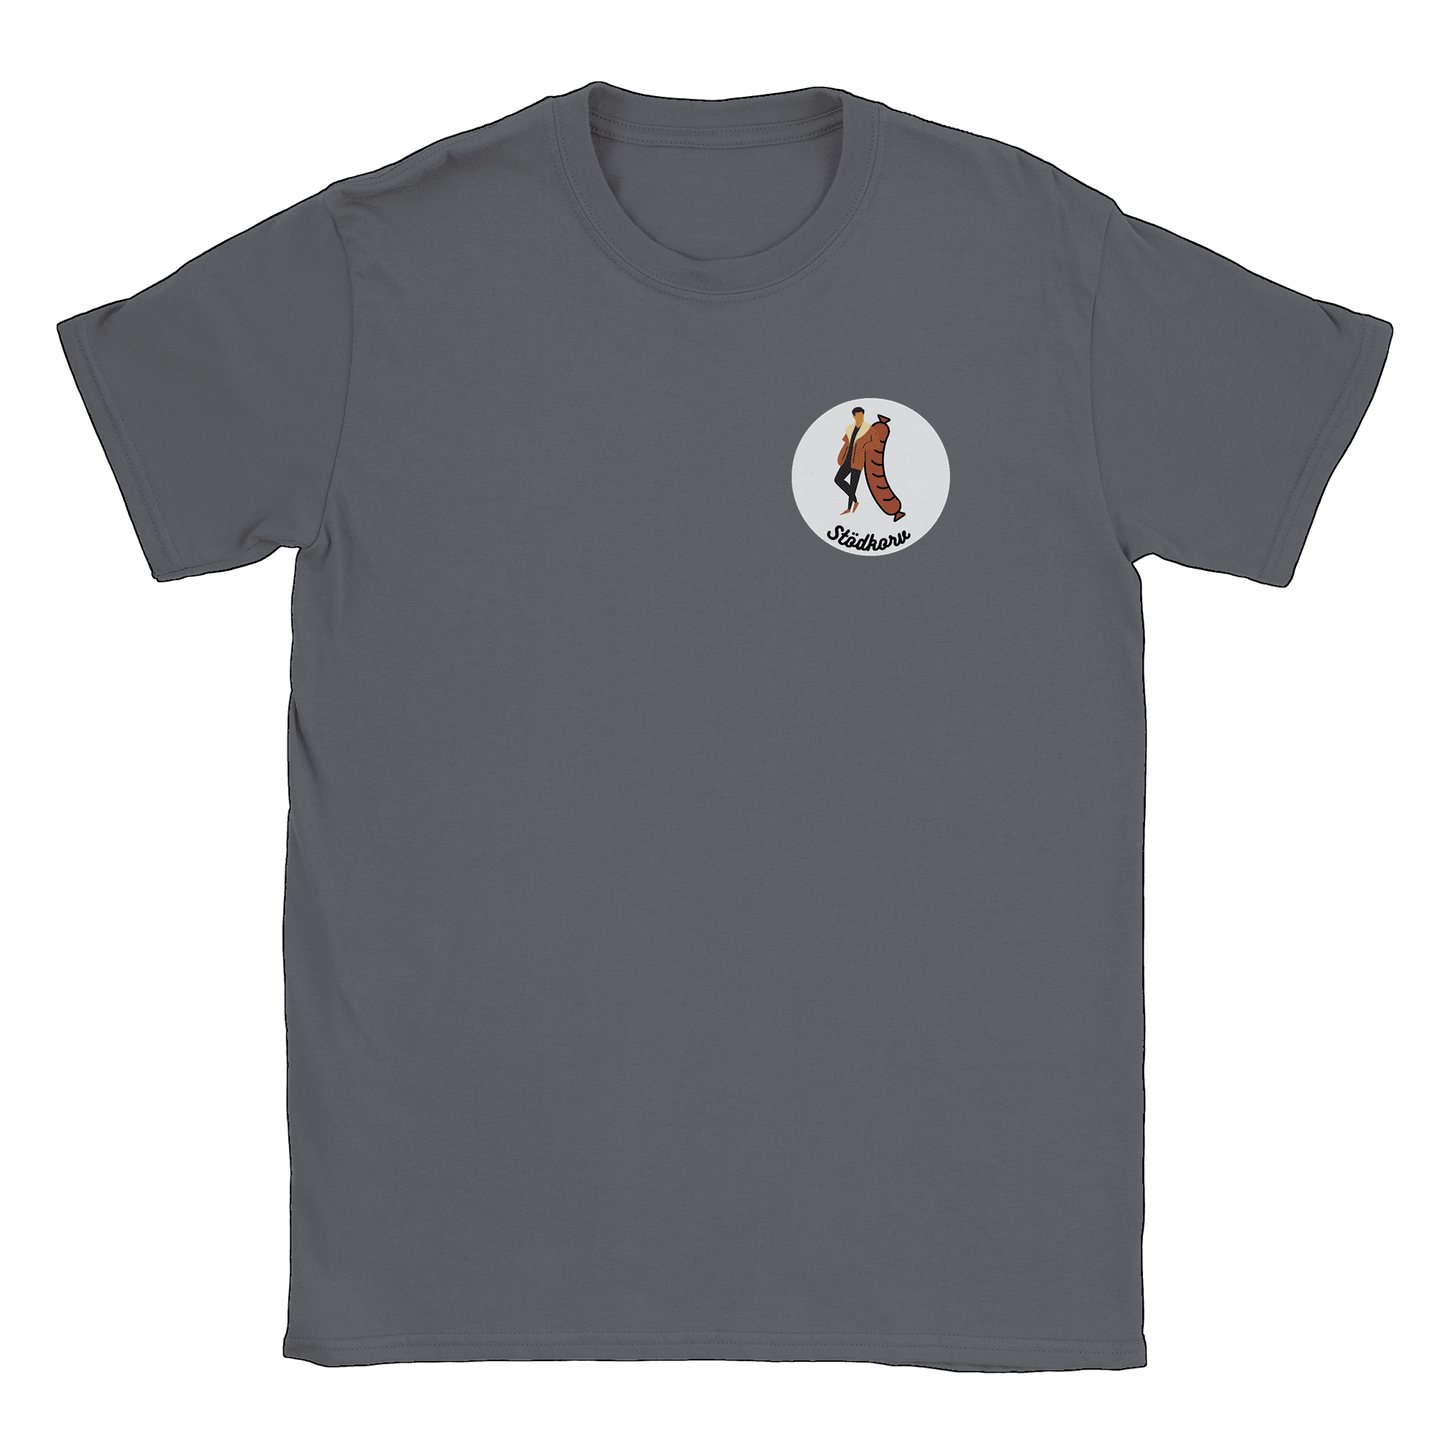 Stödkorven - T-shirt Charcoal